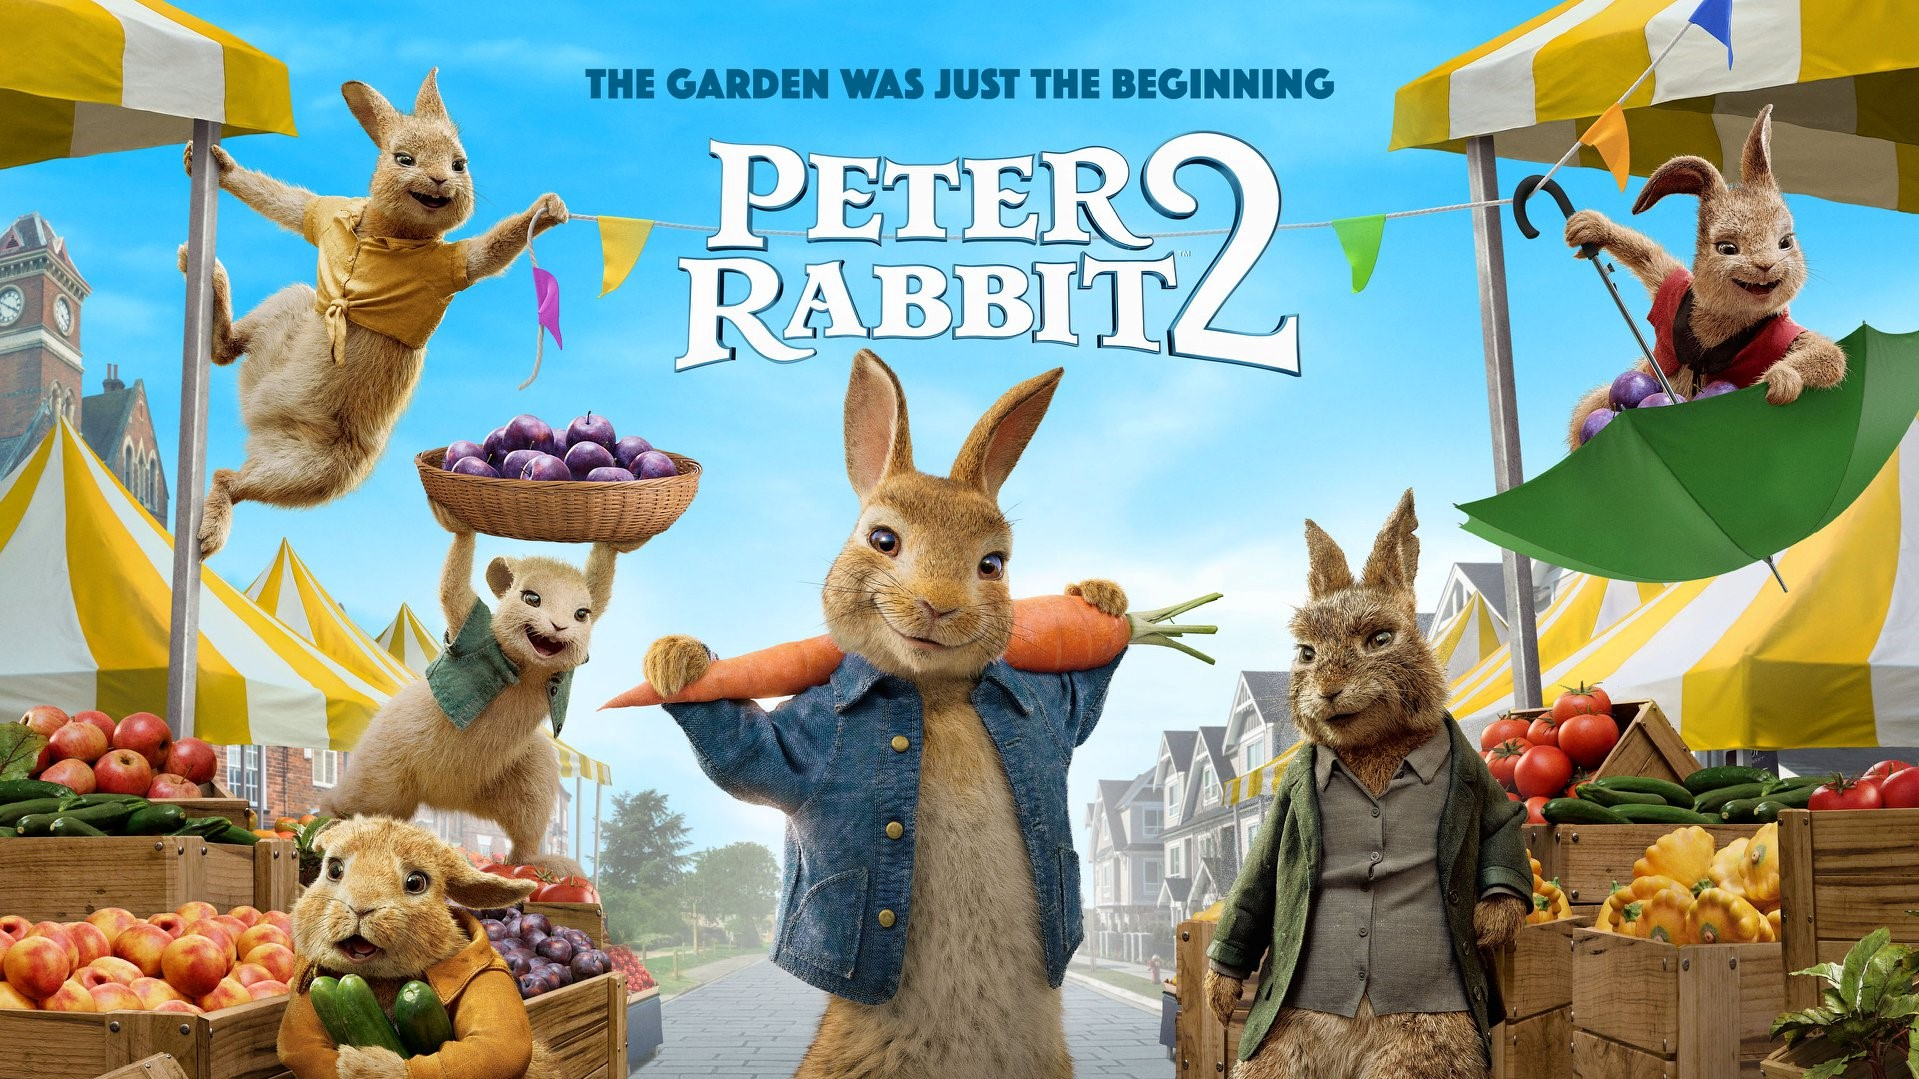 Peter Rabbit 2: The Runaway / Peter Rabbit 2: The Runaway (2021)